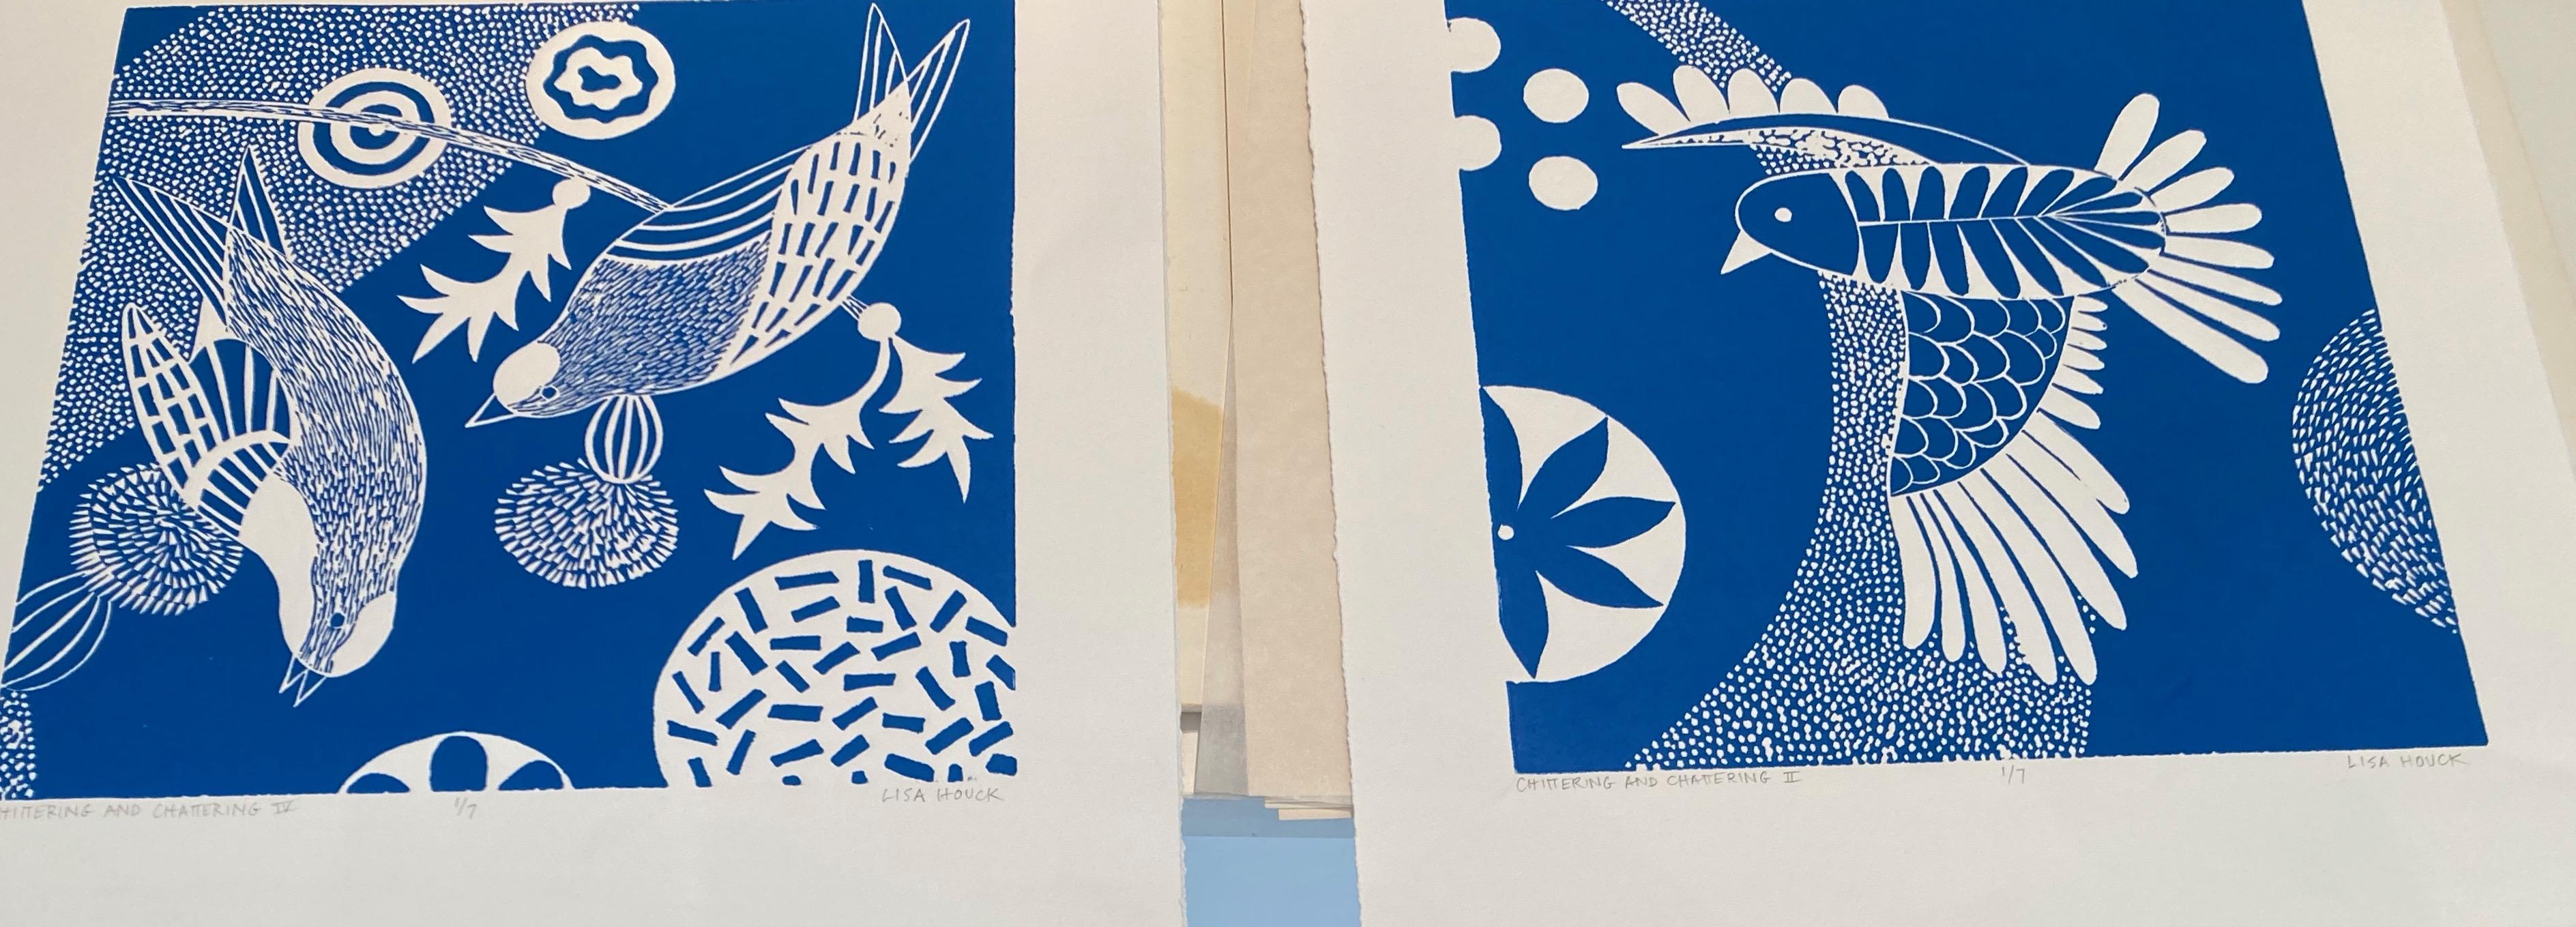 « Chittering & Chattering V »  série de linogravures d'oiseaux d'inspiration folklorique en bleu et blanc - Artisanat Print par Lisa Houck